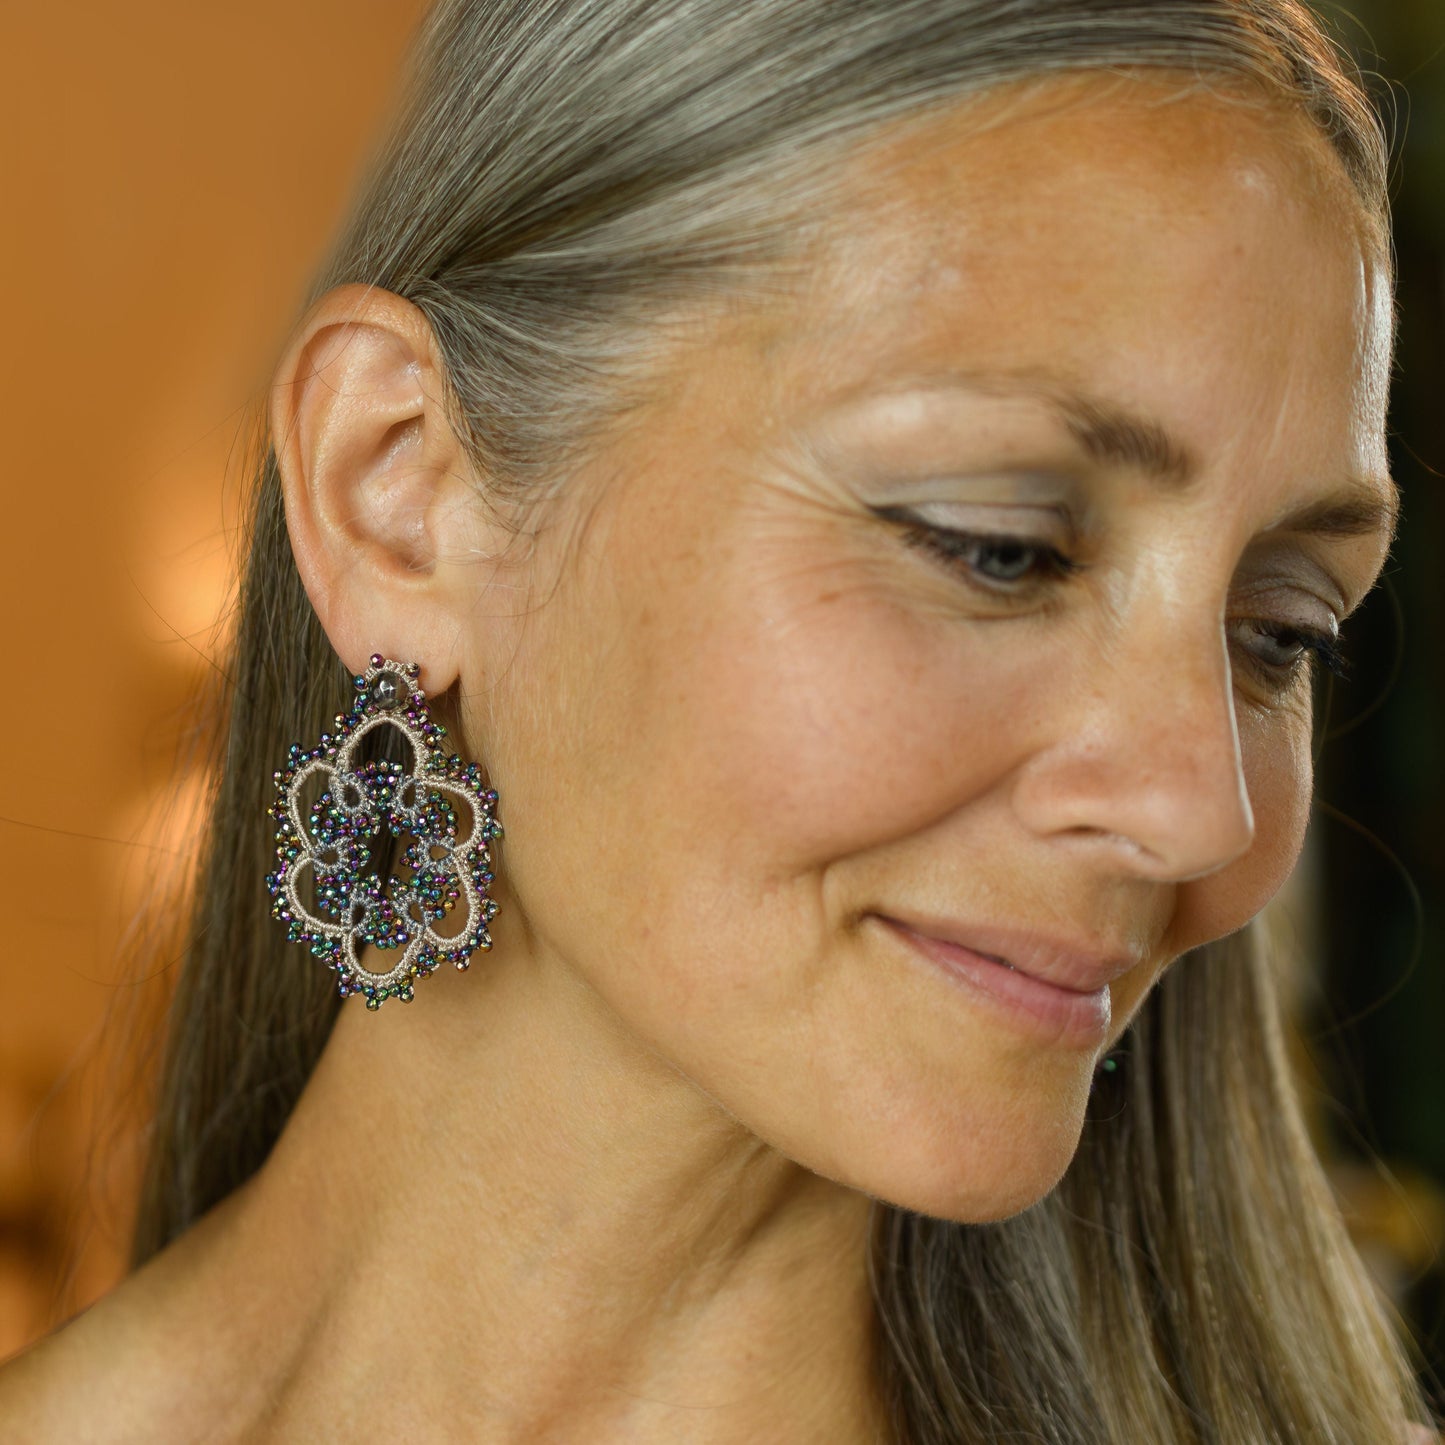 Flower lace earrings, vintage green silver